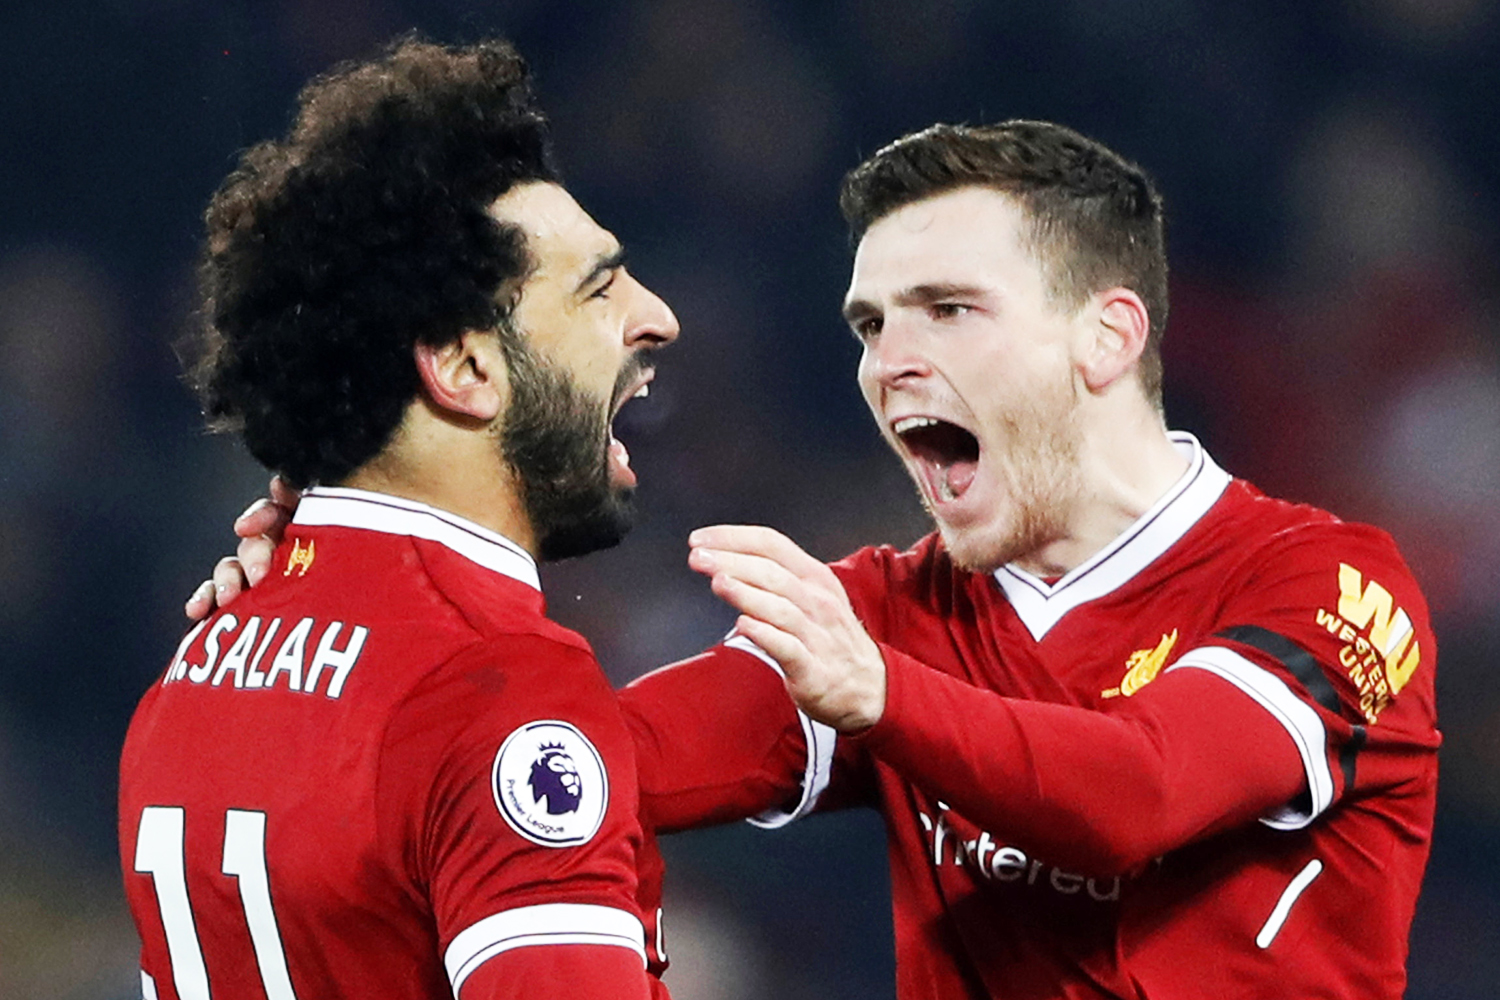 Os jogadores do Liverpool, Mohamed Salah e Andrew Robertson, comemoram gol durante partida contra o Manchester City, válida pelo Campeonato Inglês - 14/01/2018